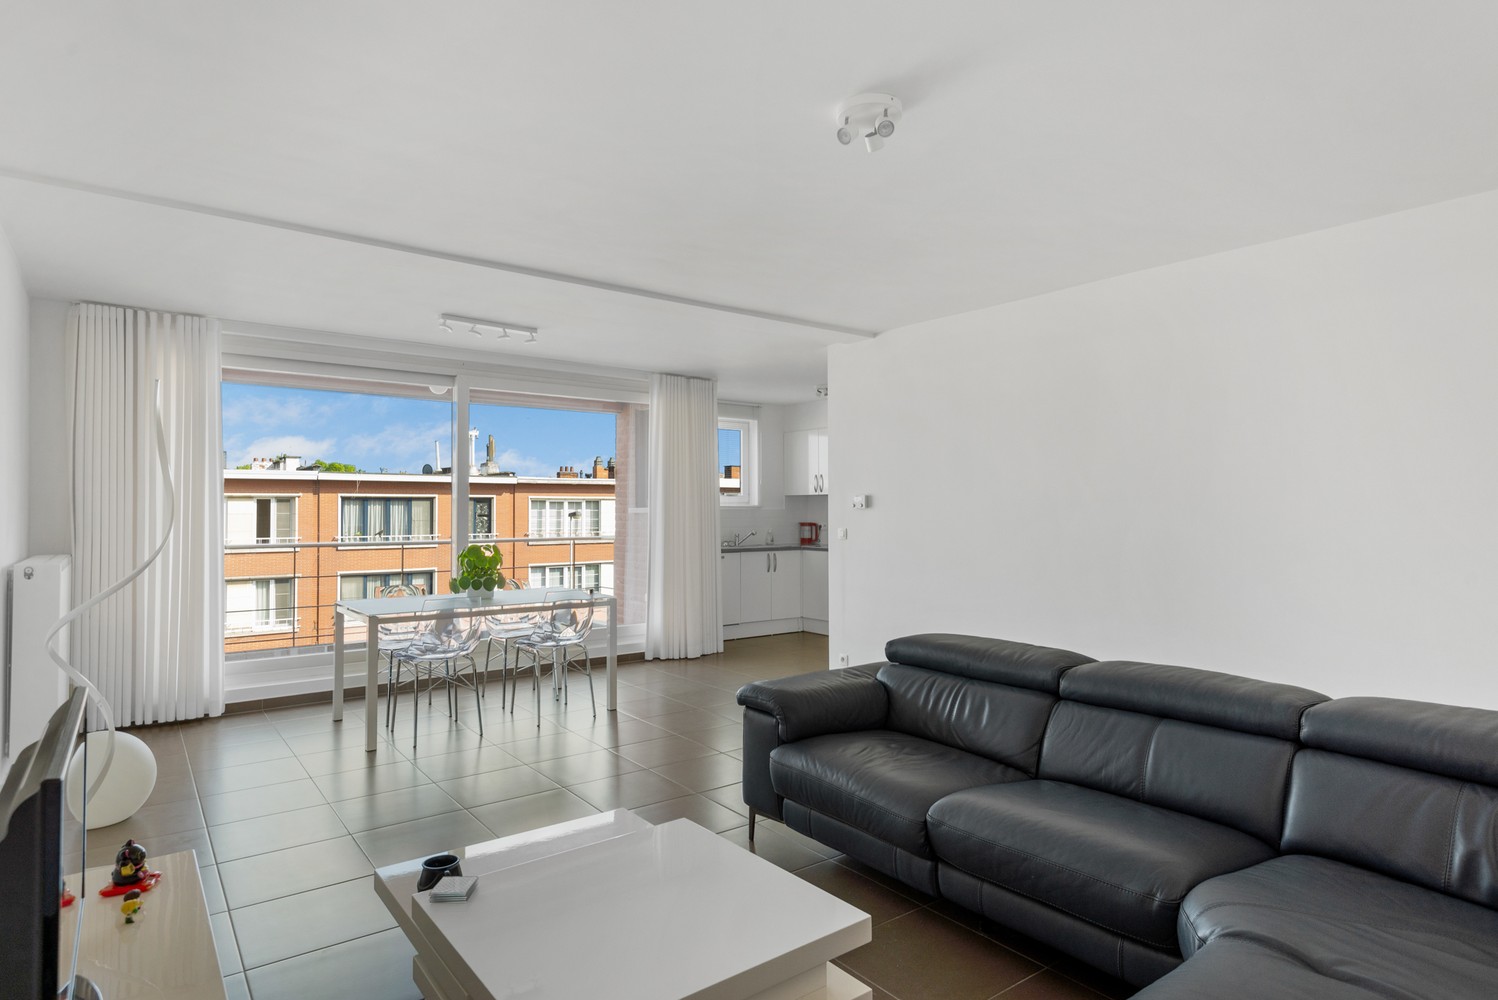 Ruim, lichtrijk & energiezuinig appartement met 2 slaapkamers & zonnig terras in Deurne! afbeelding 5